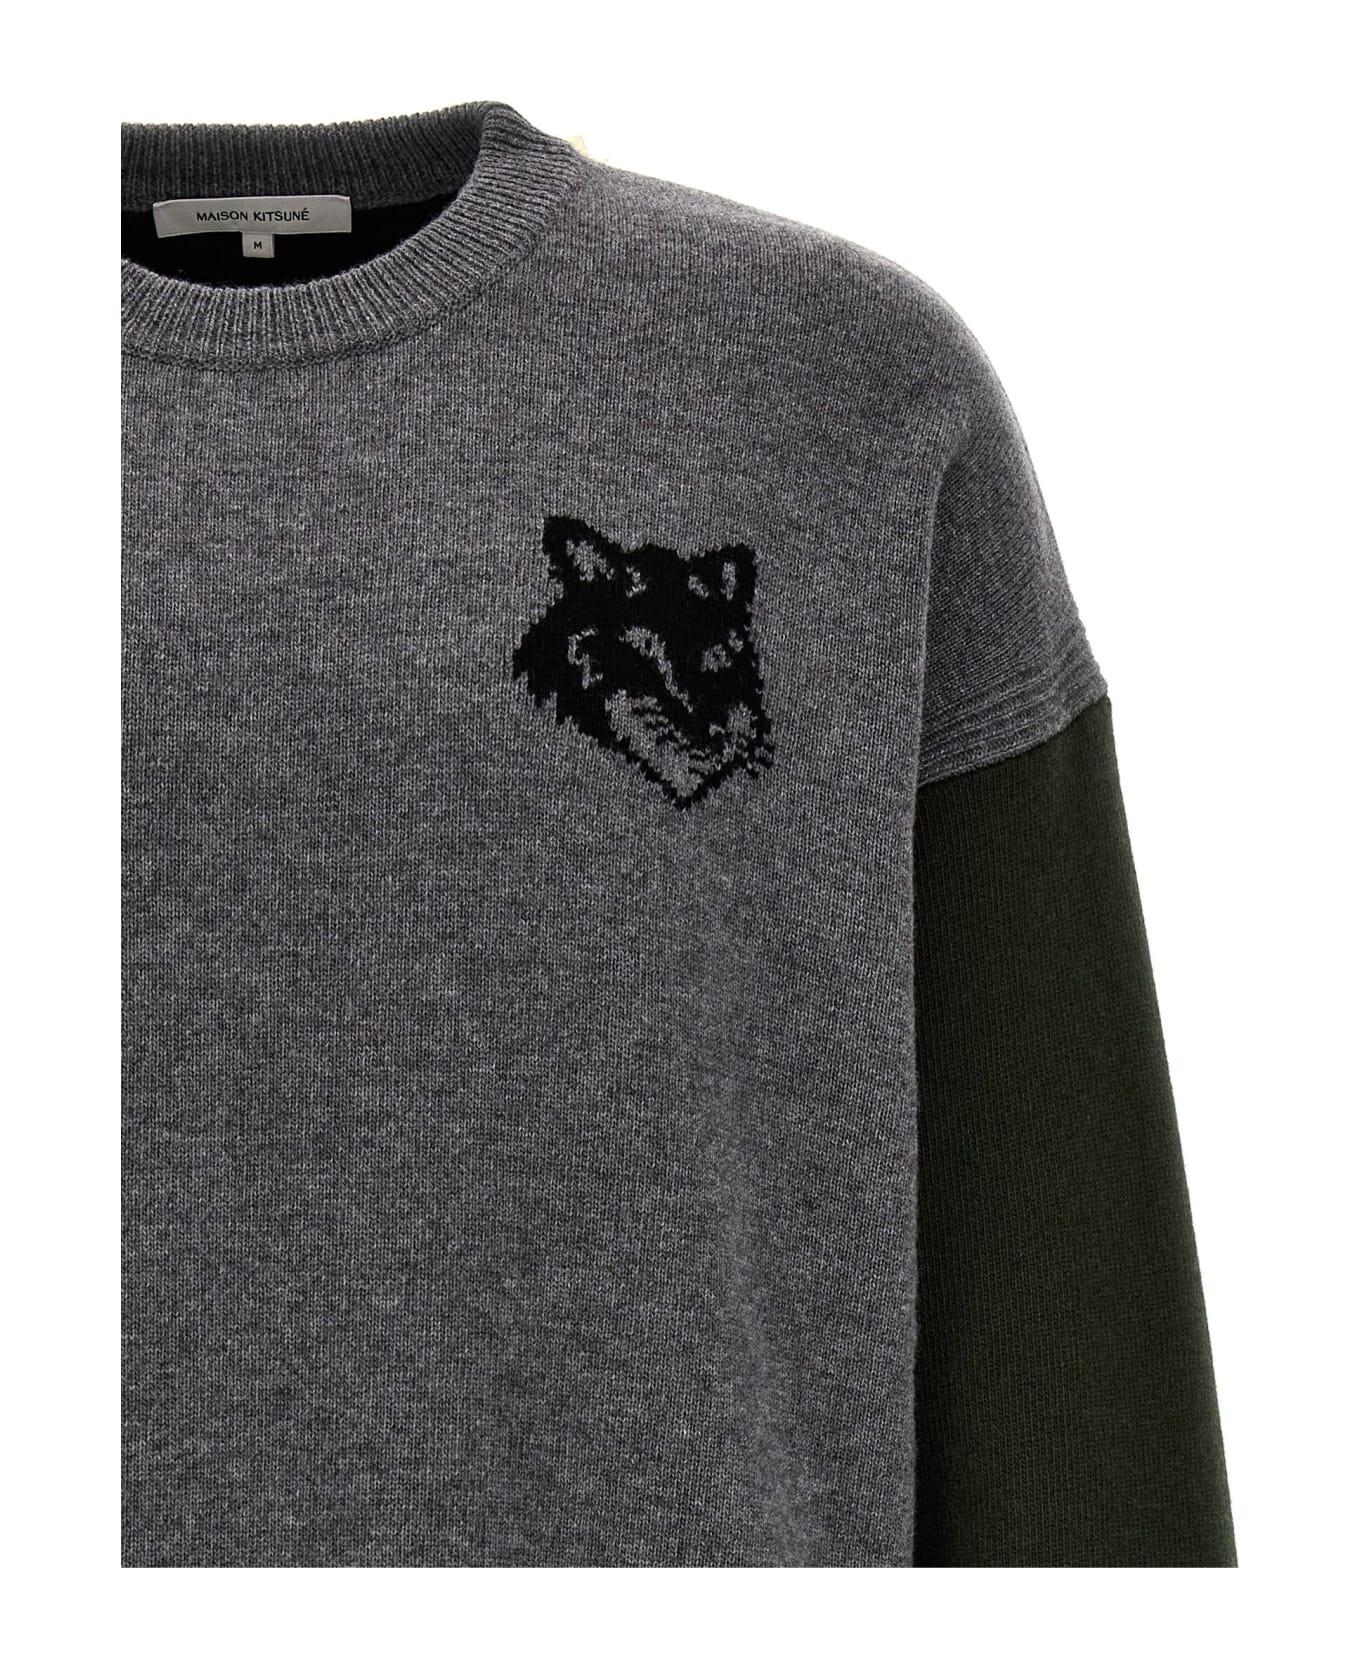 Maison Kitsuné 'fox Head' Sweater - Grey Melange Black ニットウェア